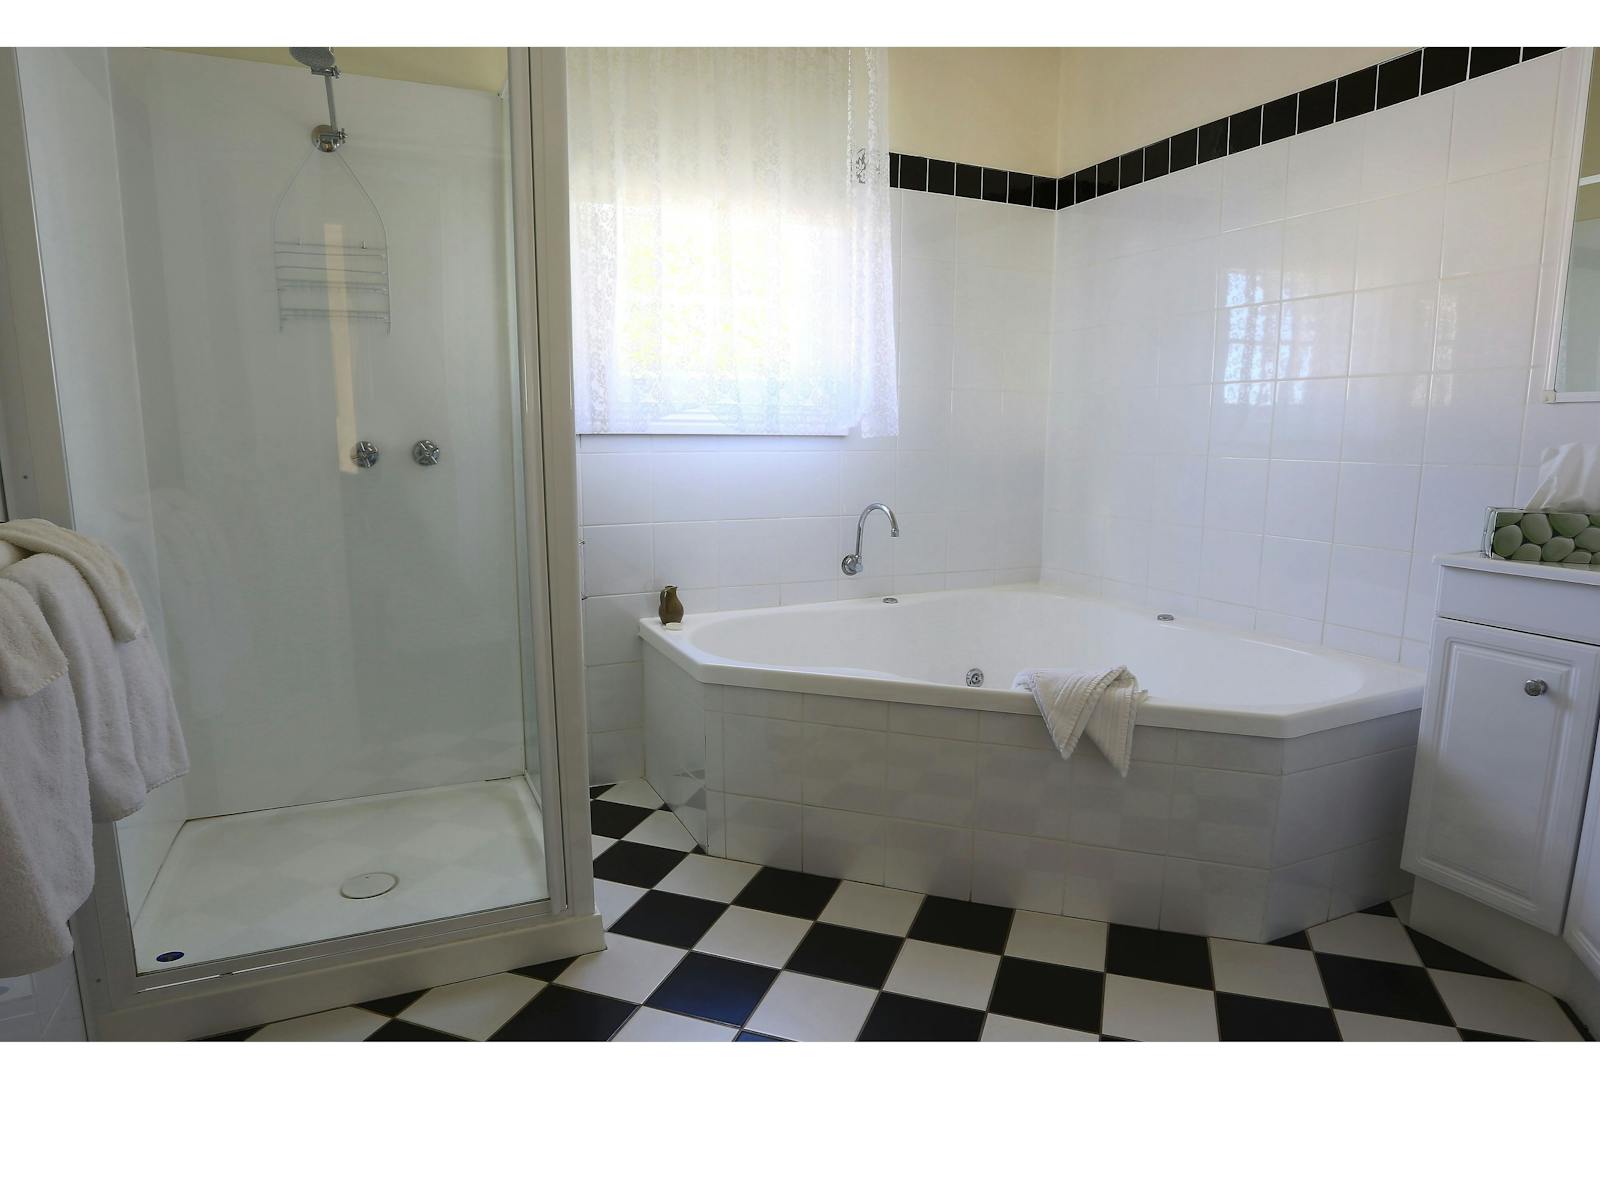 large 2 person corner spa, walk in shower, large vanity, spacious bathroom. Toilet in separate room